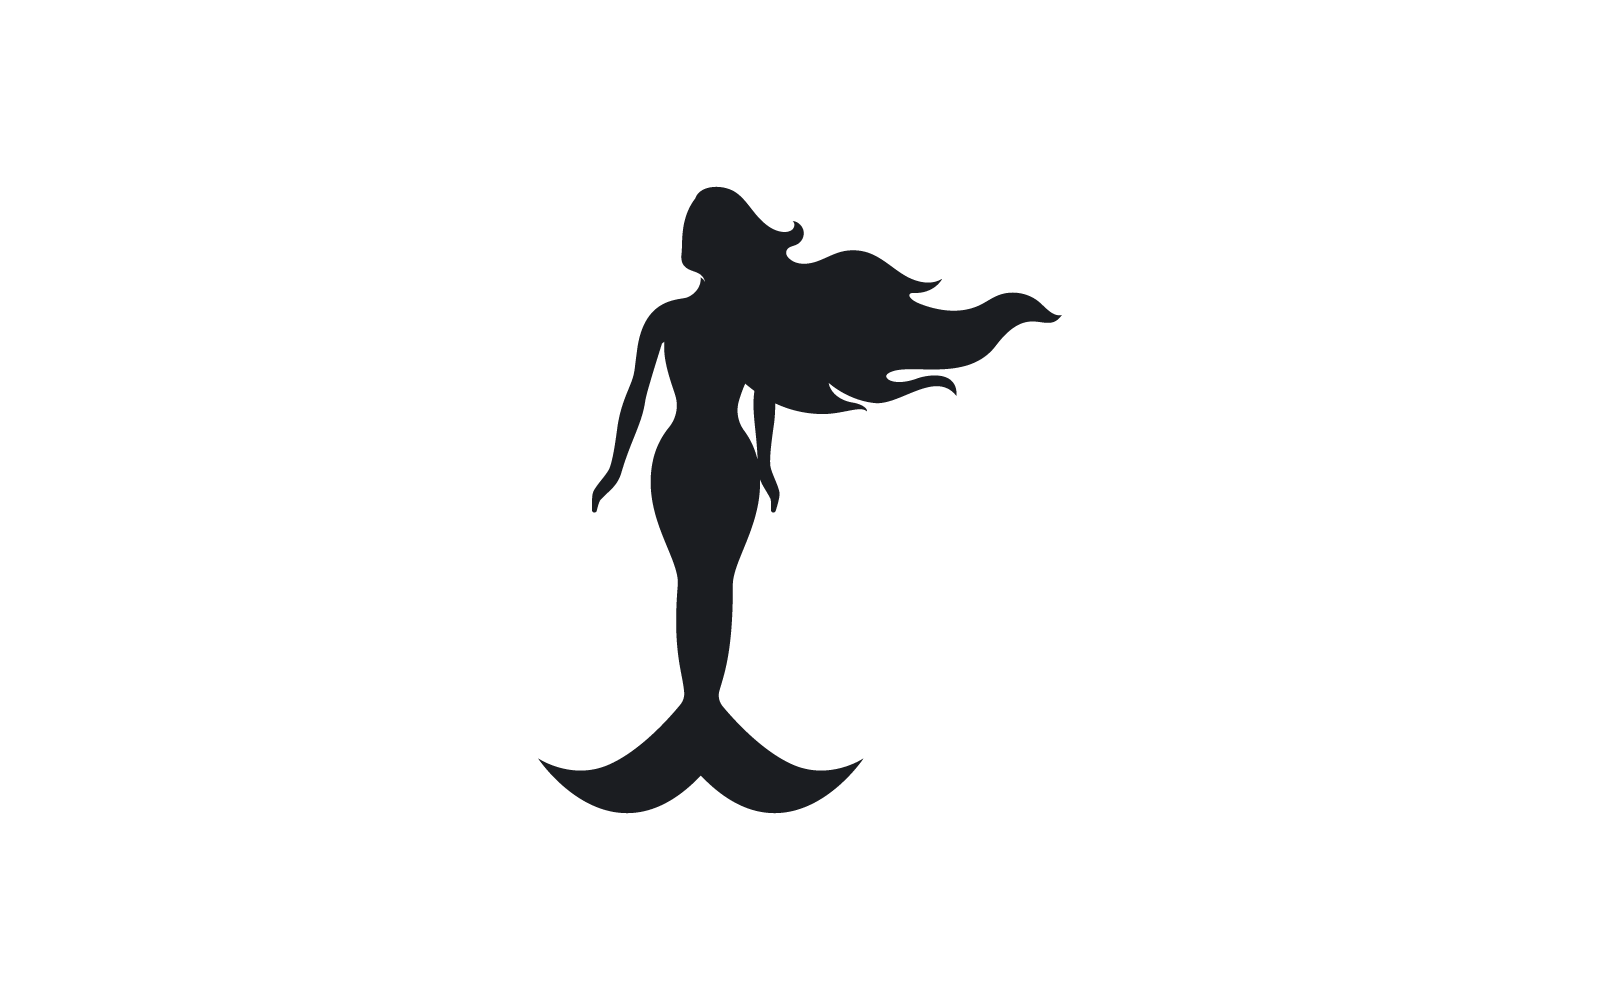 Mermaid illustration logo vector flat design